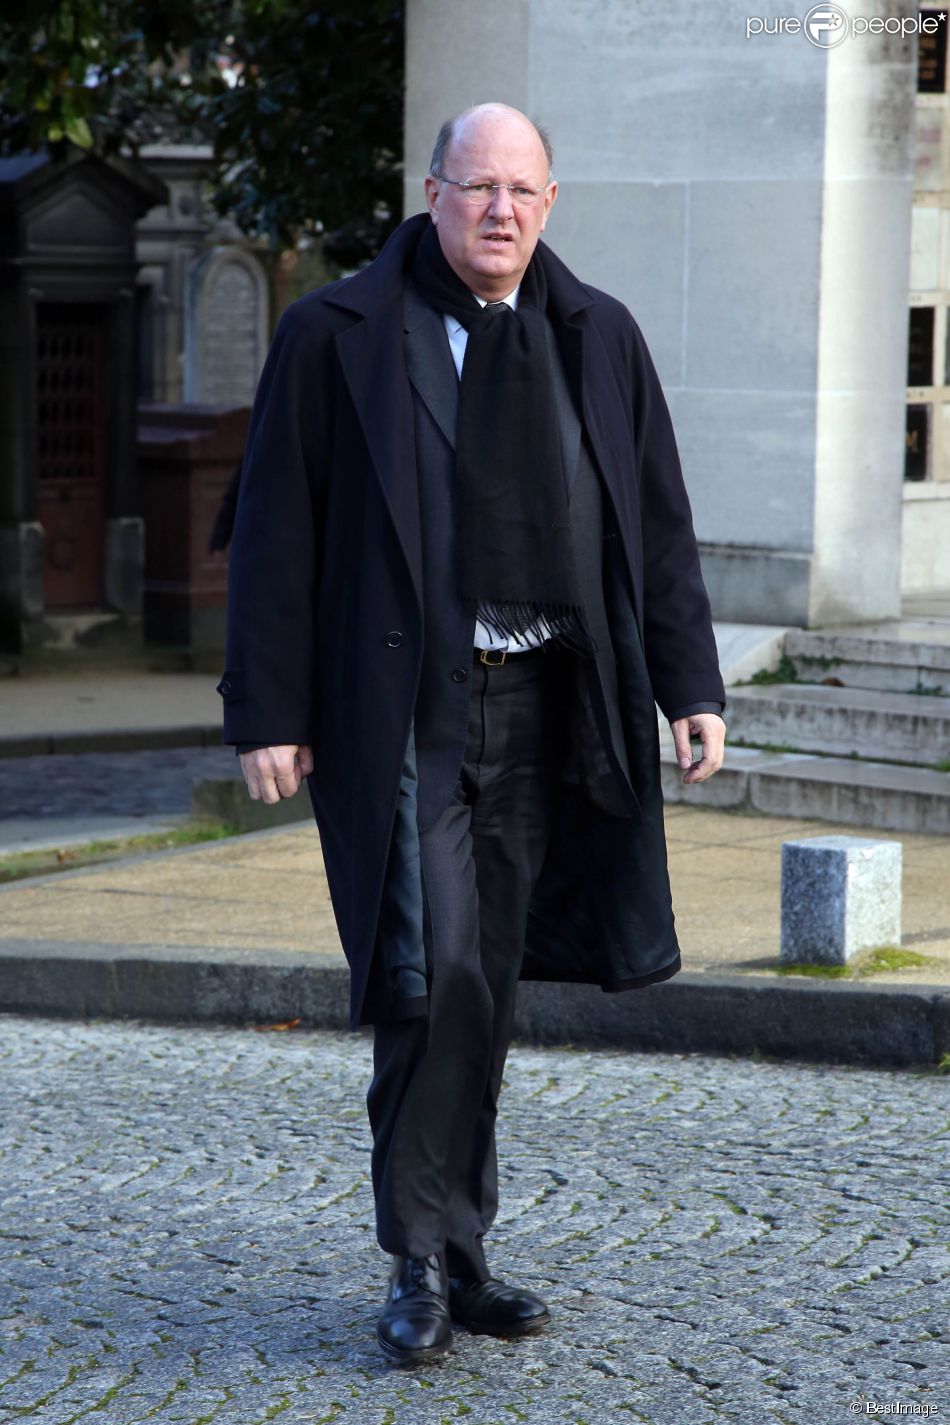  Remy Pfimlin - Obseques de Erik Izraelewicz, ancien directeur du journal Le Monde, au Pere Lachaise a Paris. Le 4 decembre 2012&amp;nbsp;  